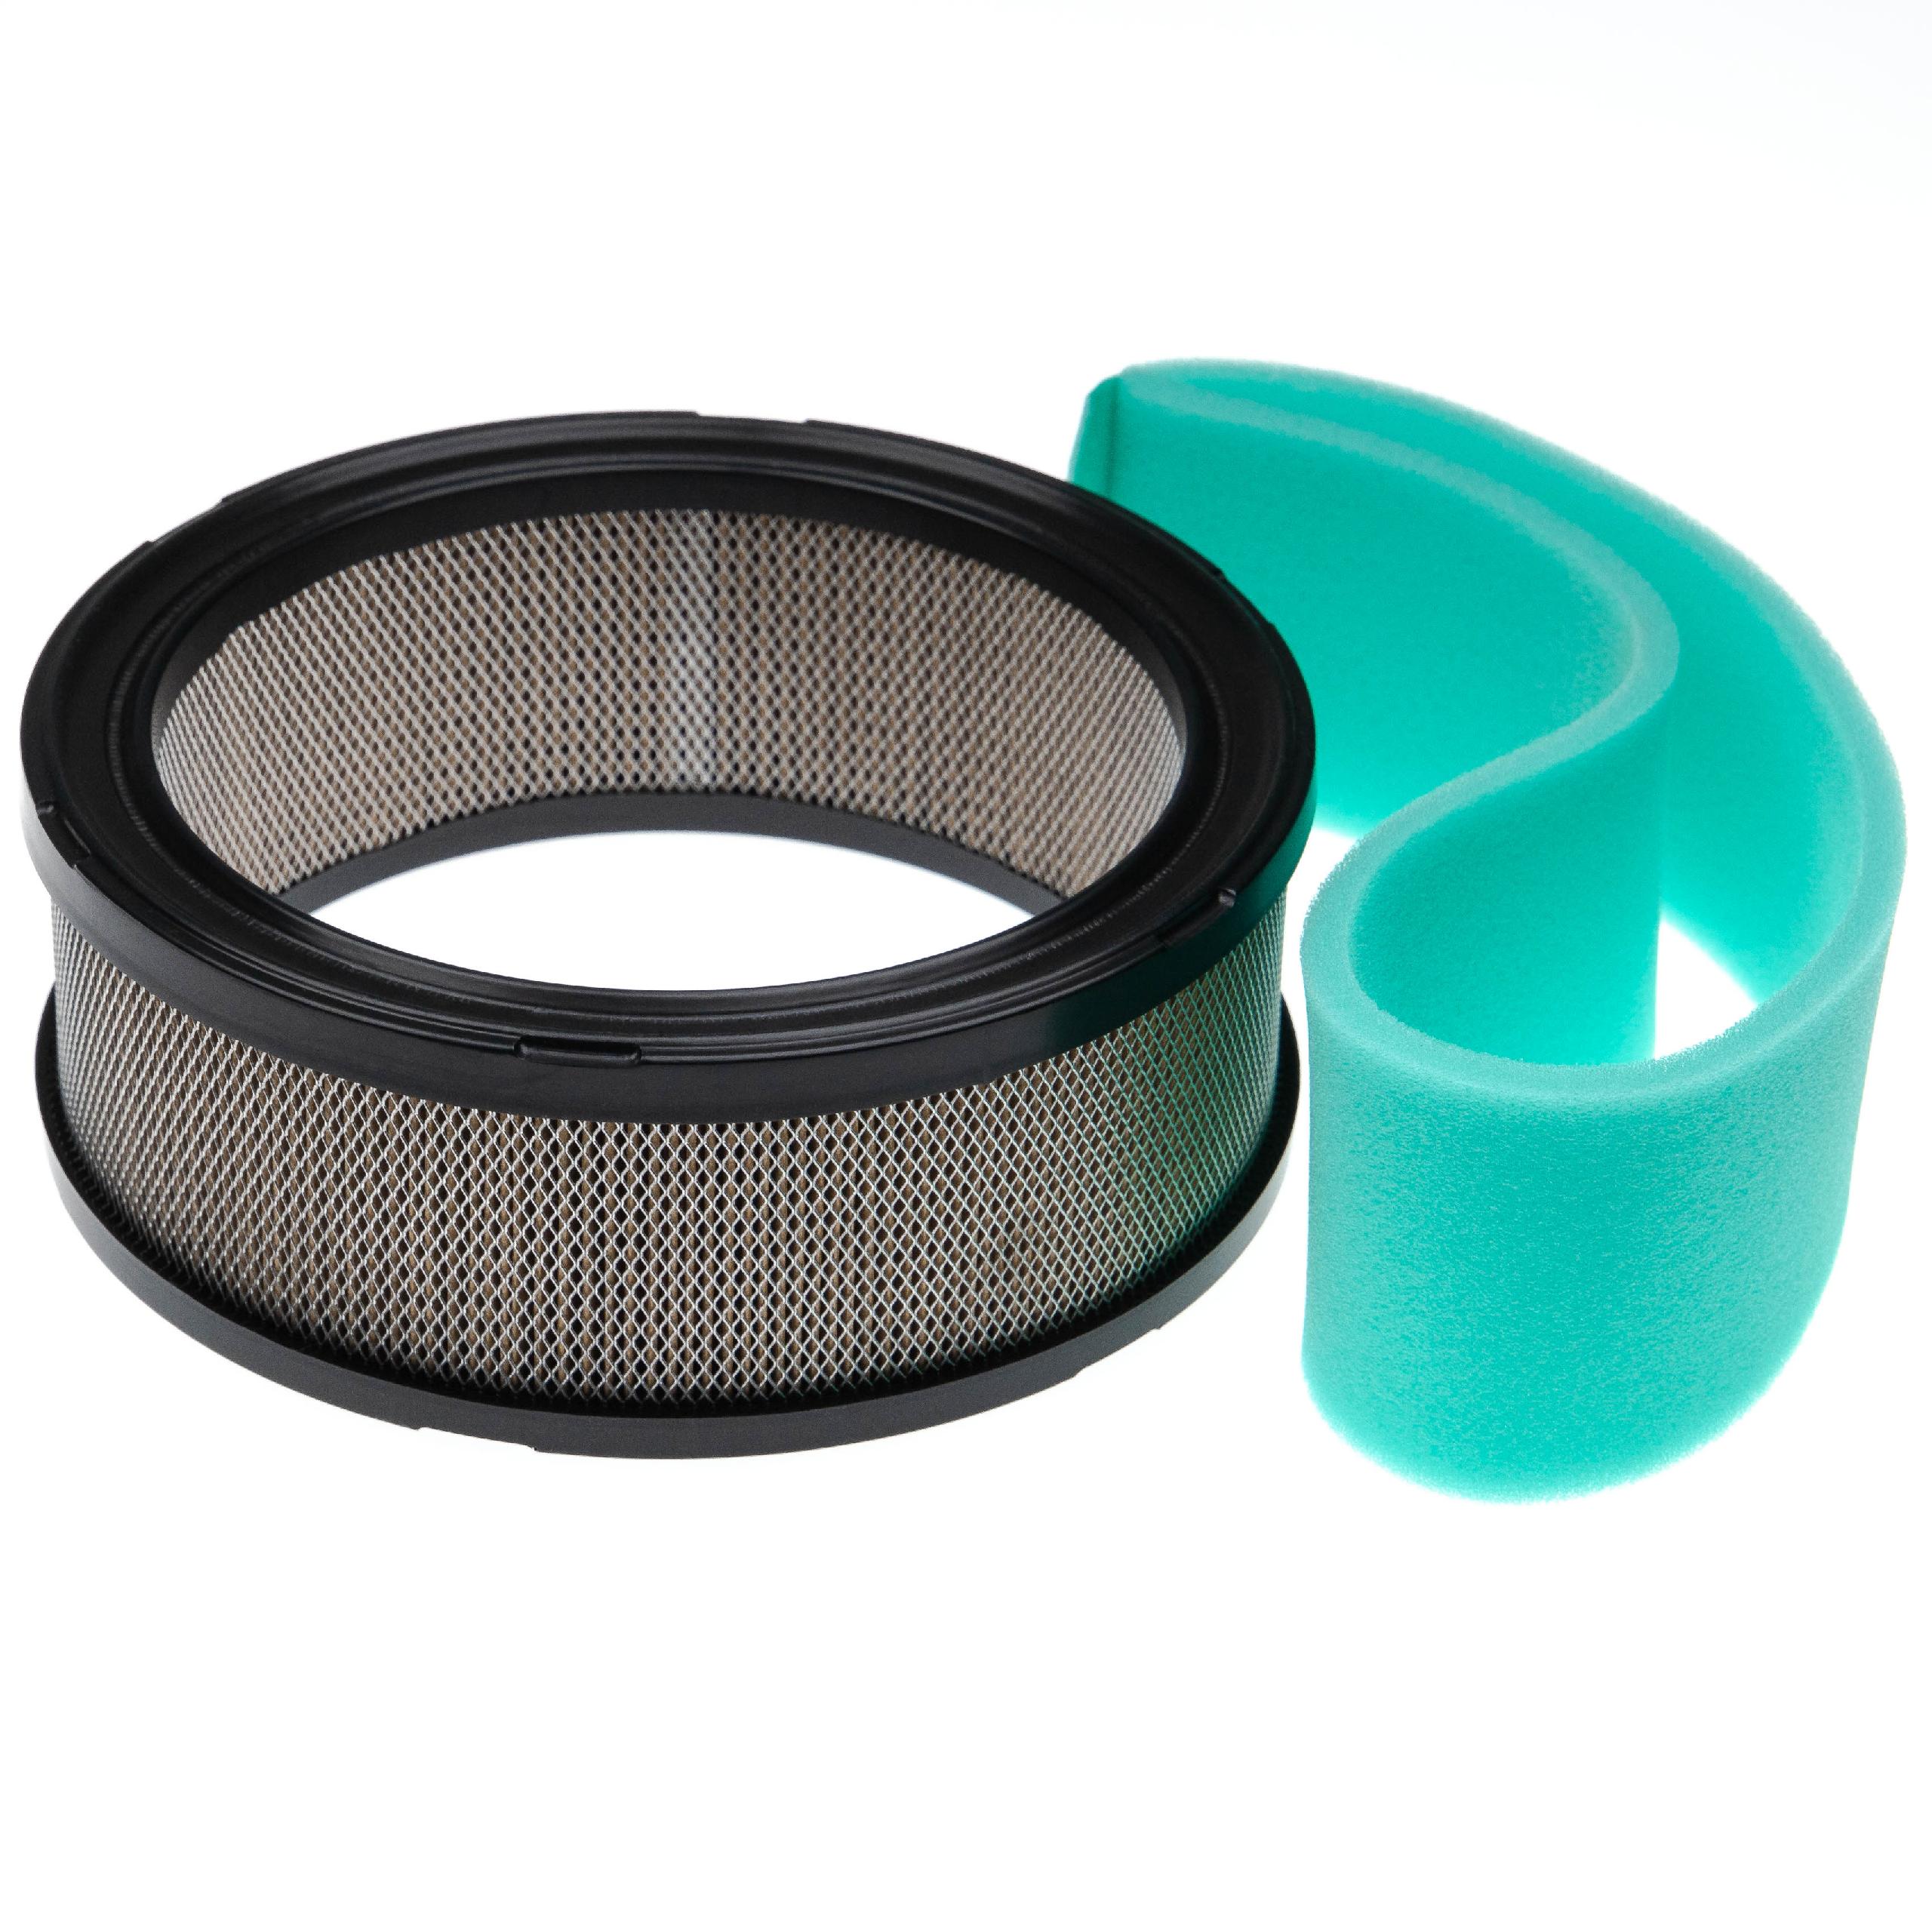 2x Filtr zamiennik Ariens 21530800 - Zestaw filtrów (1x filtr powietrza, 1x filtr wstępny)